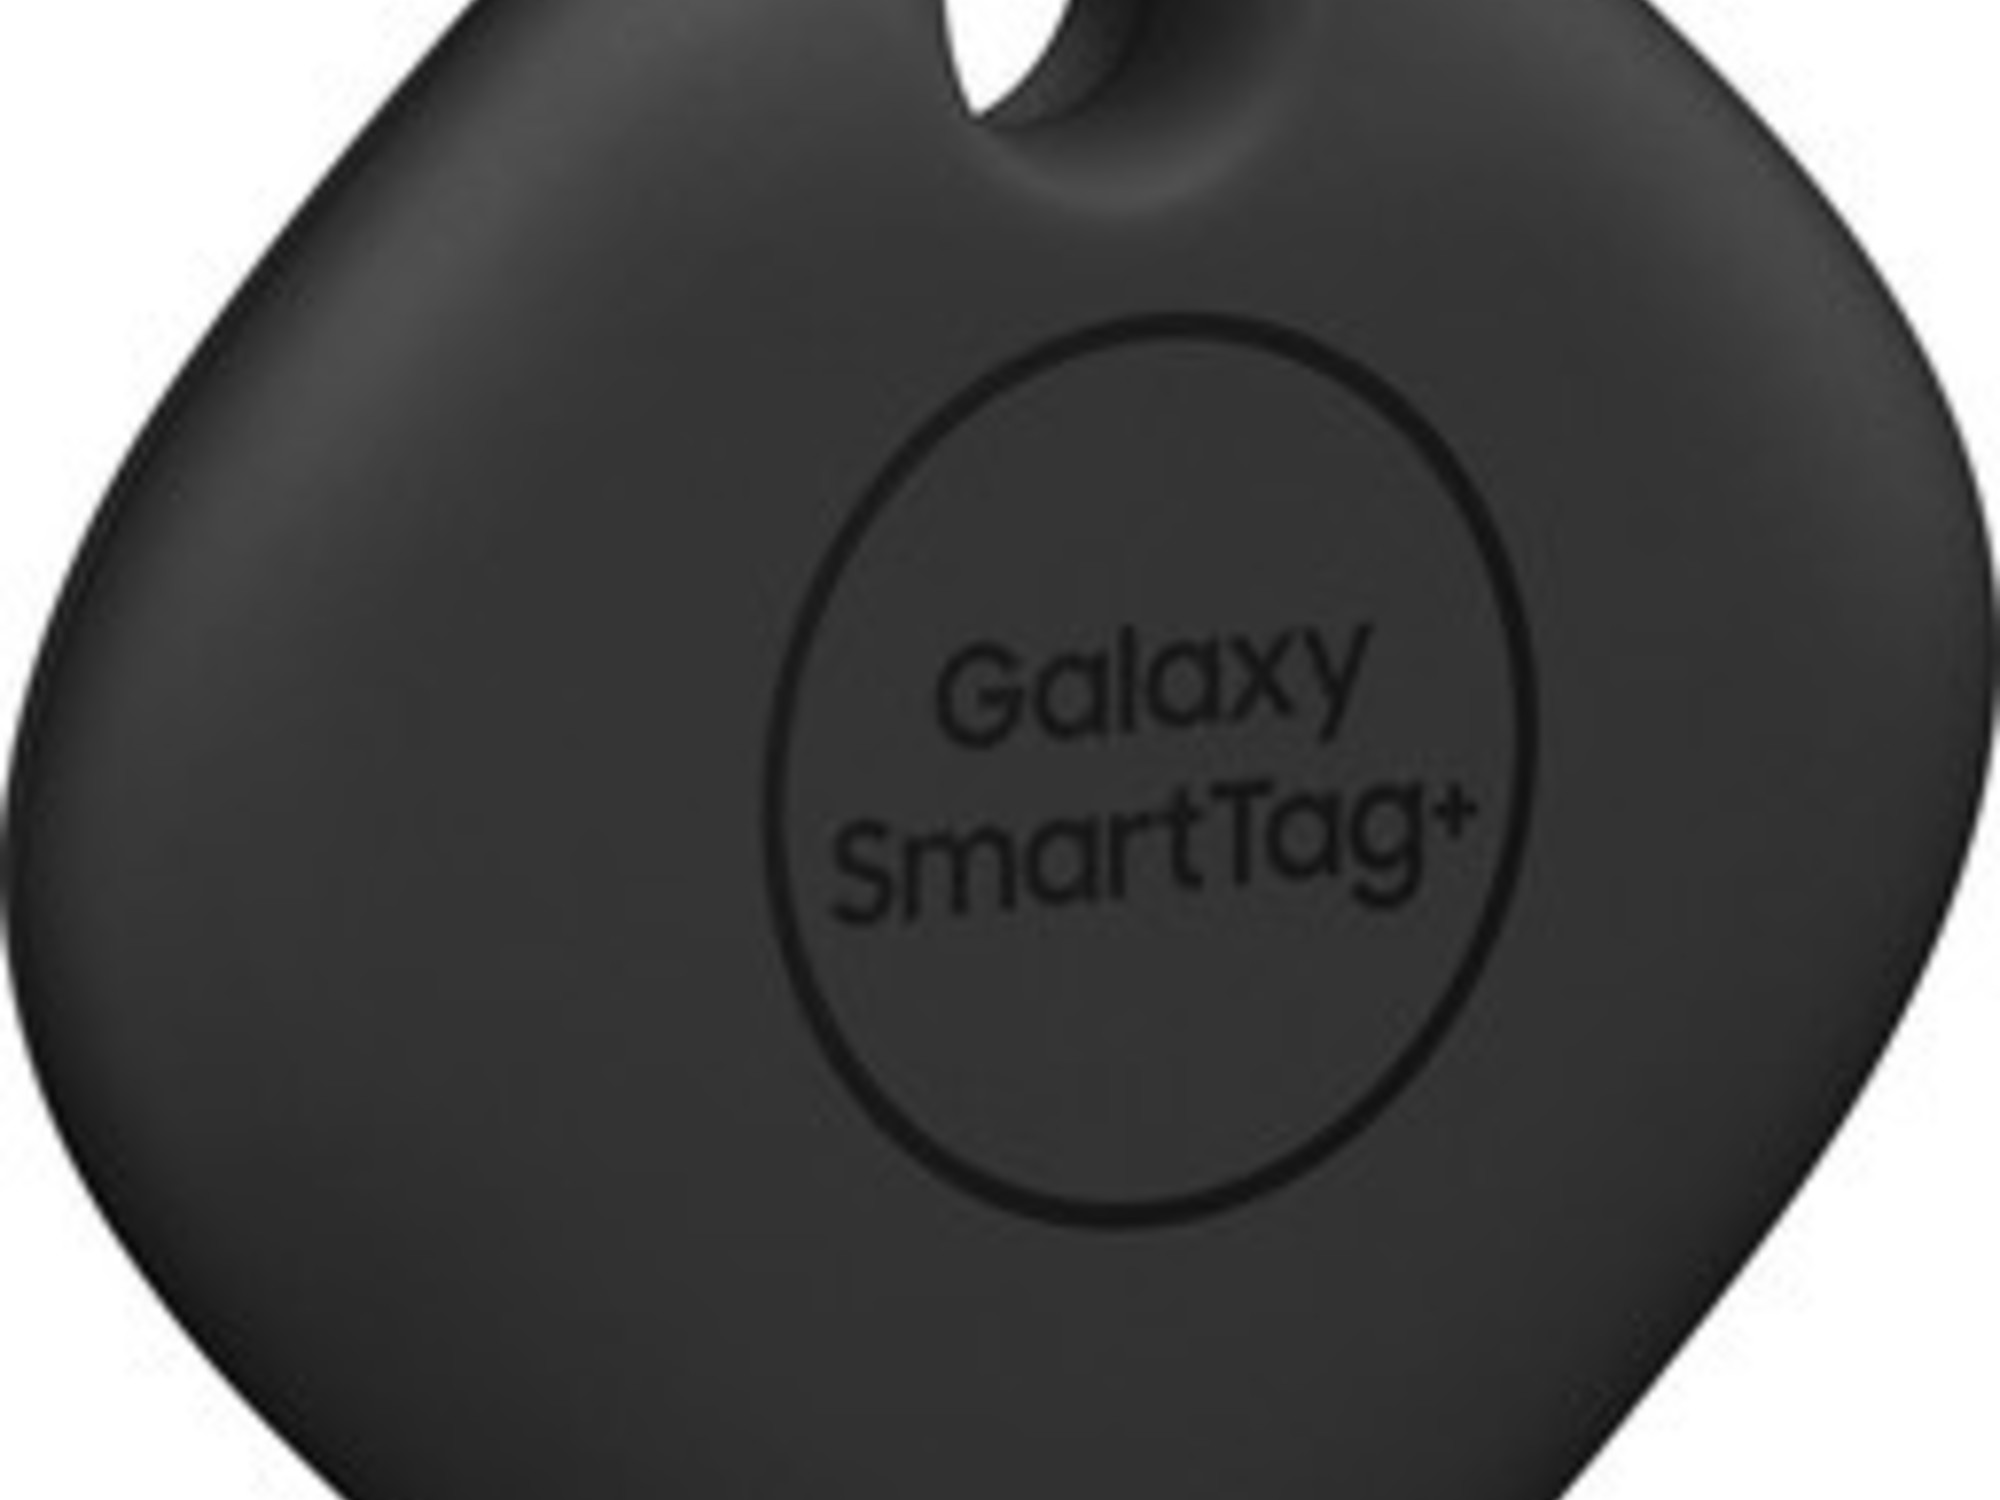 Porte Clé connecté/Tracker Samsung Galaxy SmartTag (Noir) à prix bas